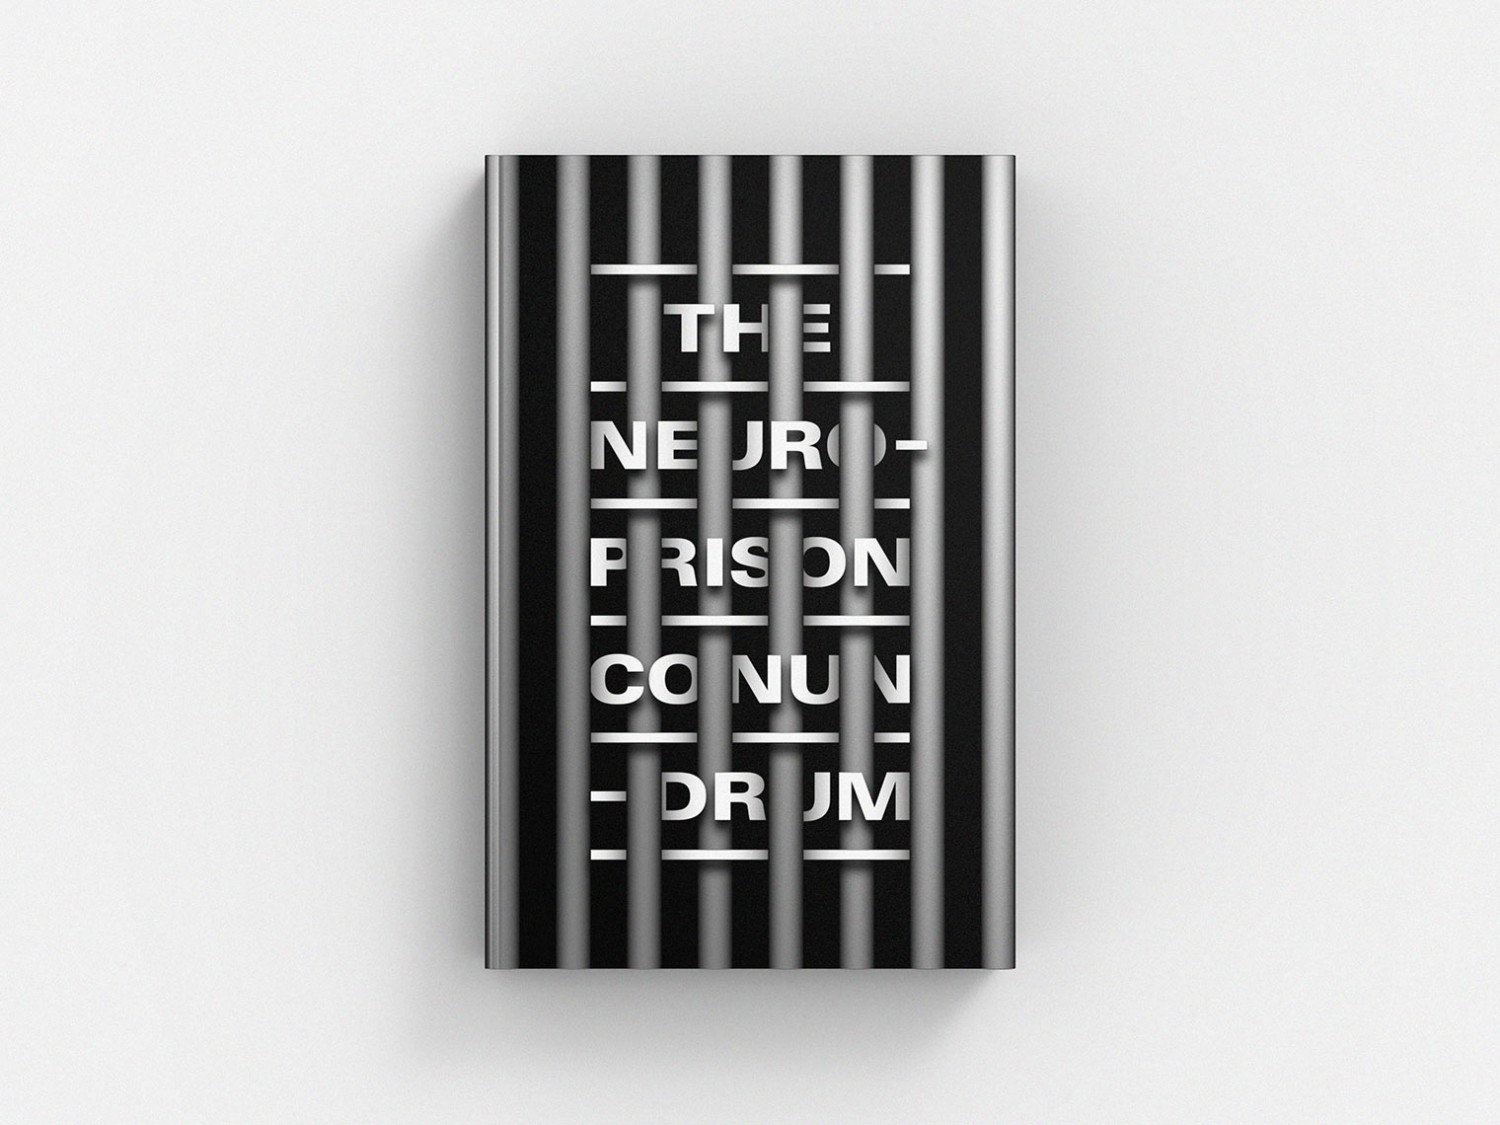 The Neuro-Prison Conundrum